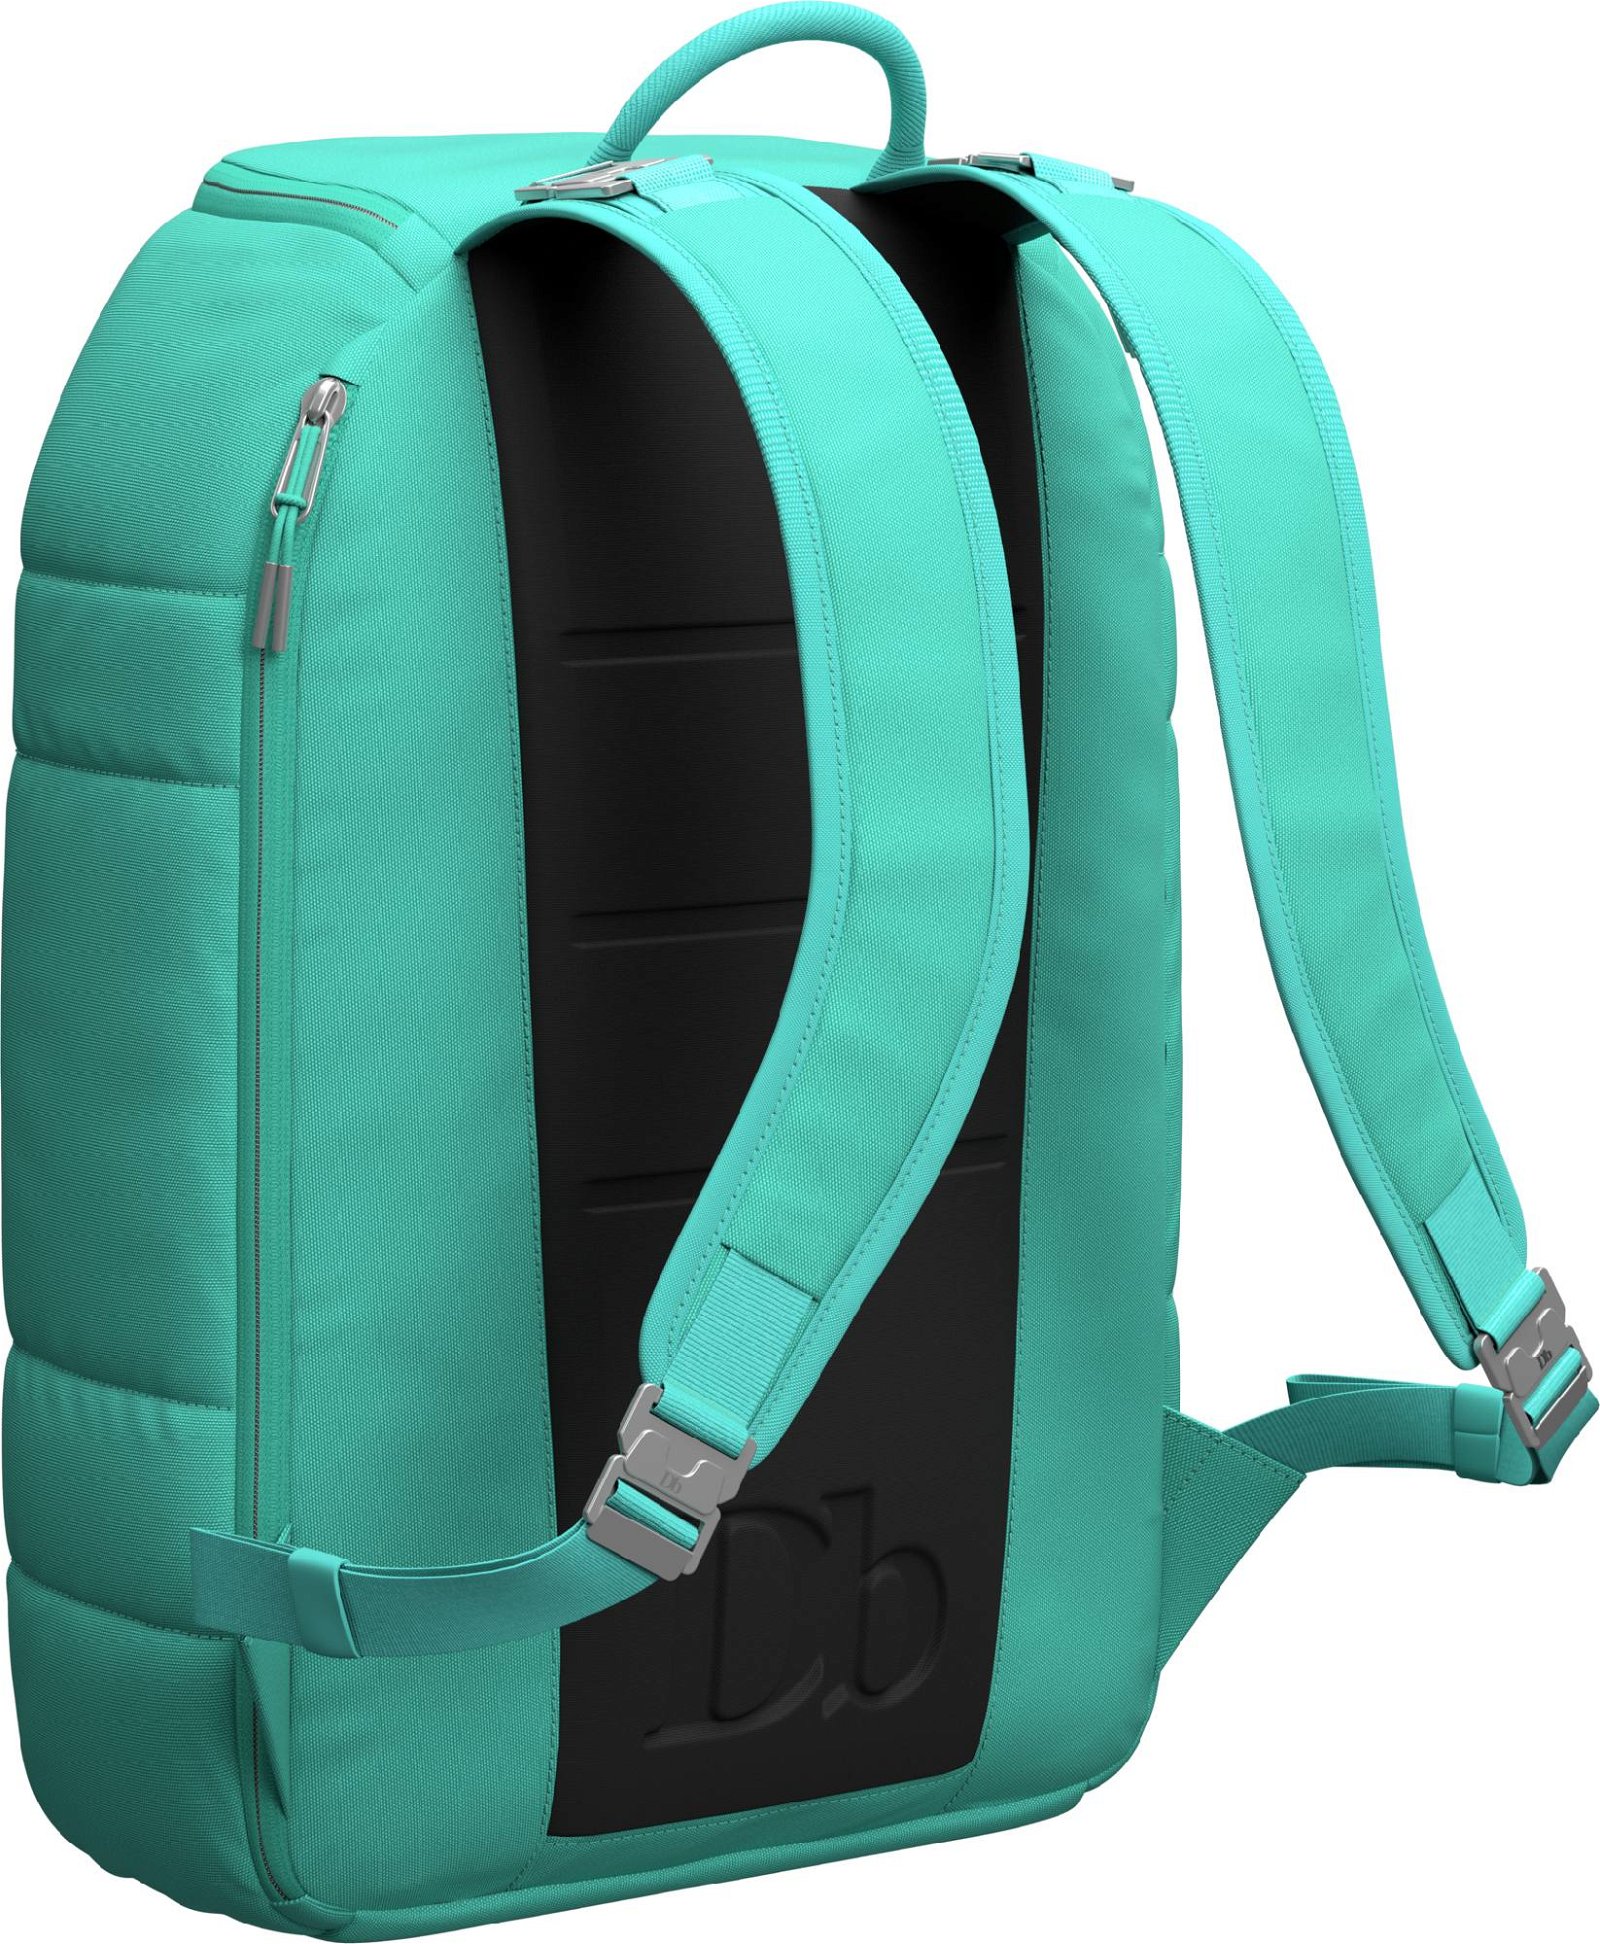 Db The Ramverk 21L Backpack